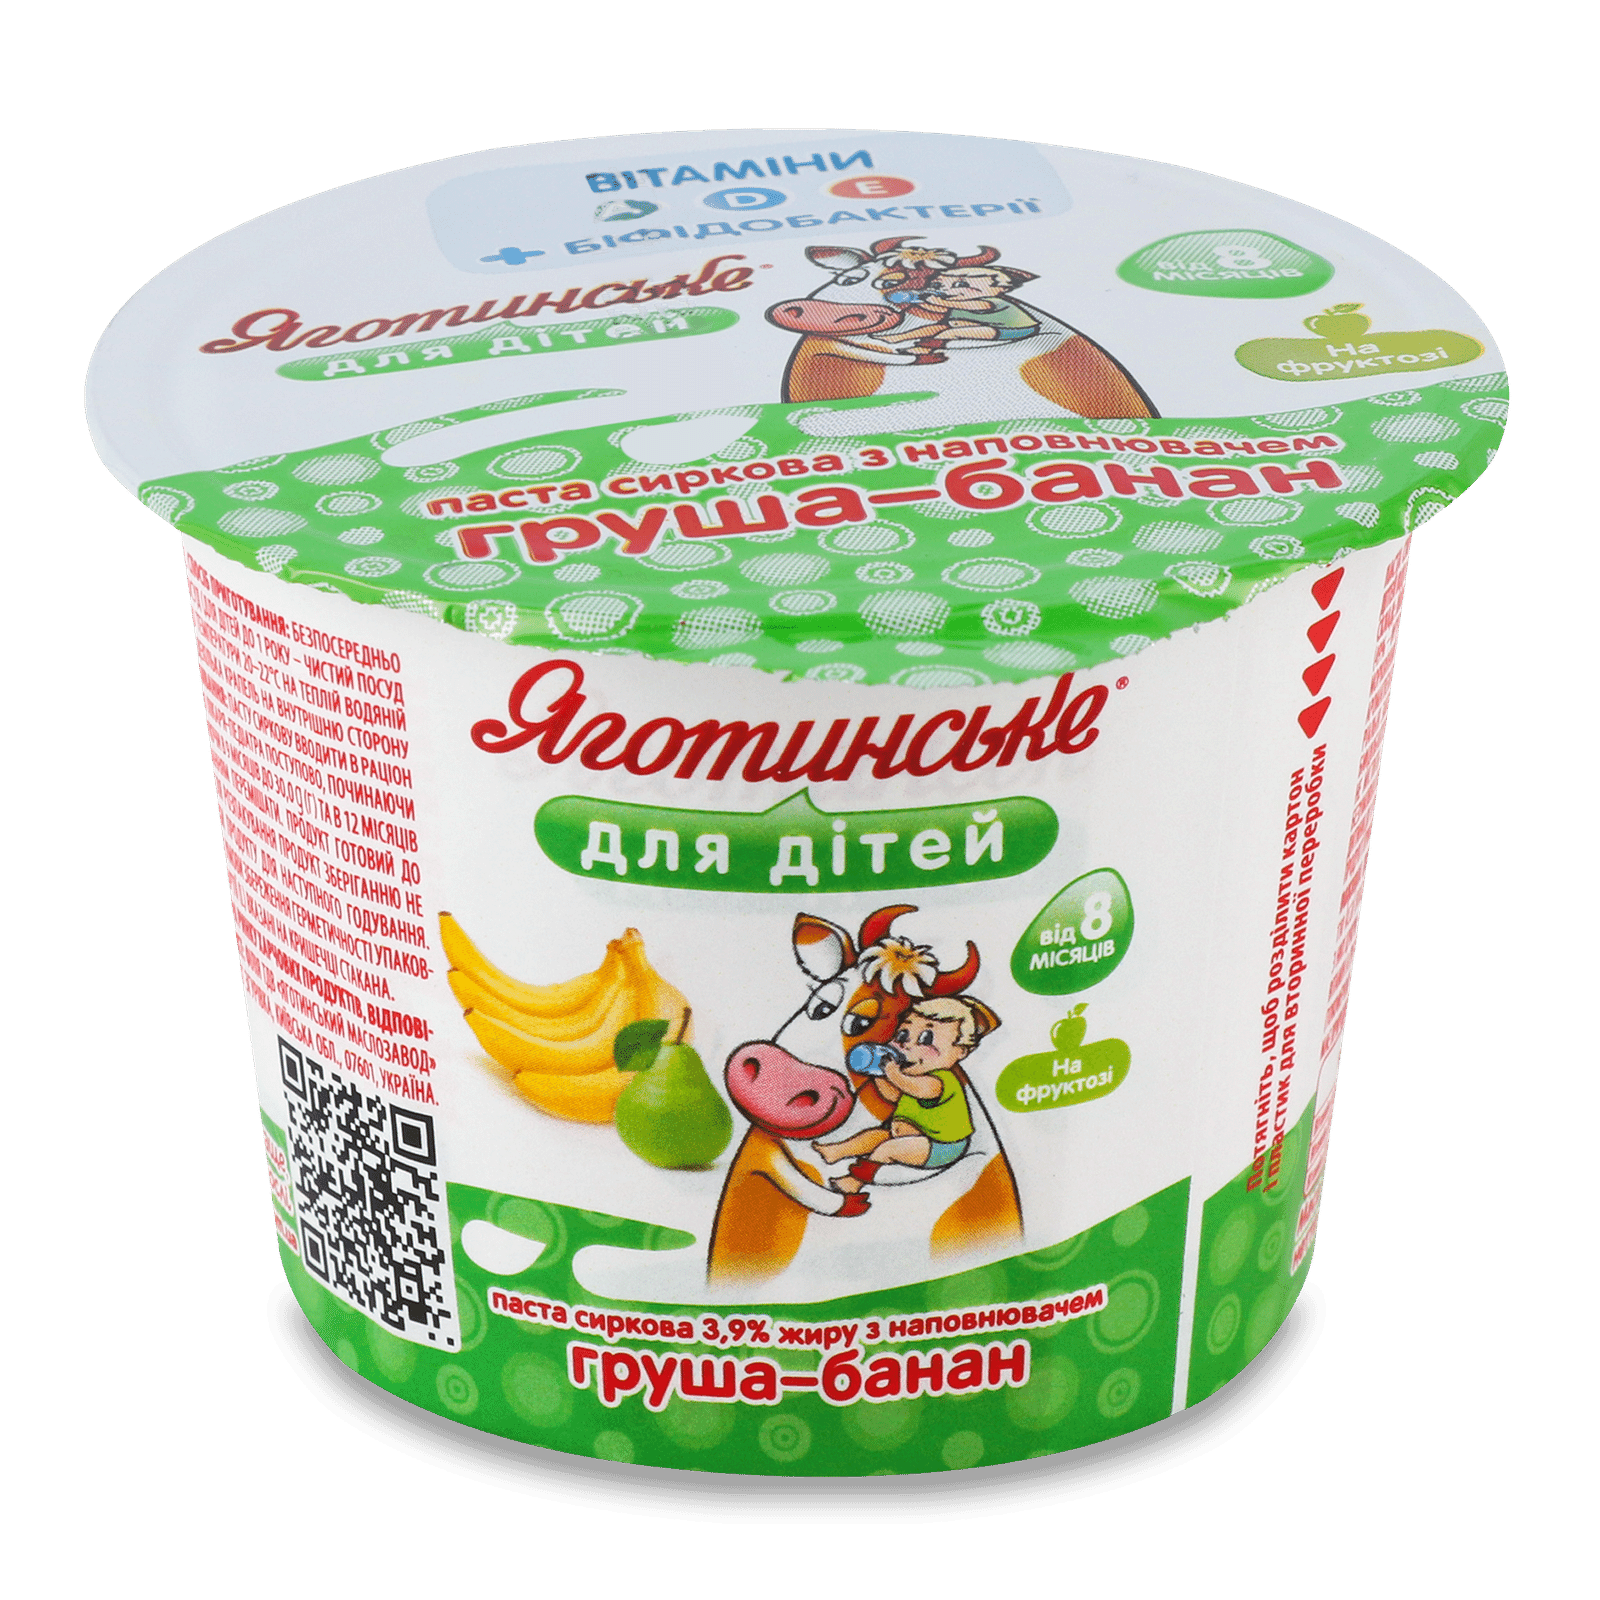 Паста сиркова Яготинське для дітей груша-банан 3,9% - 1